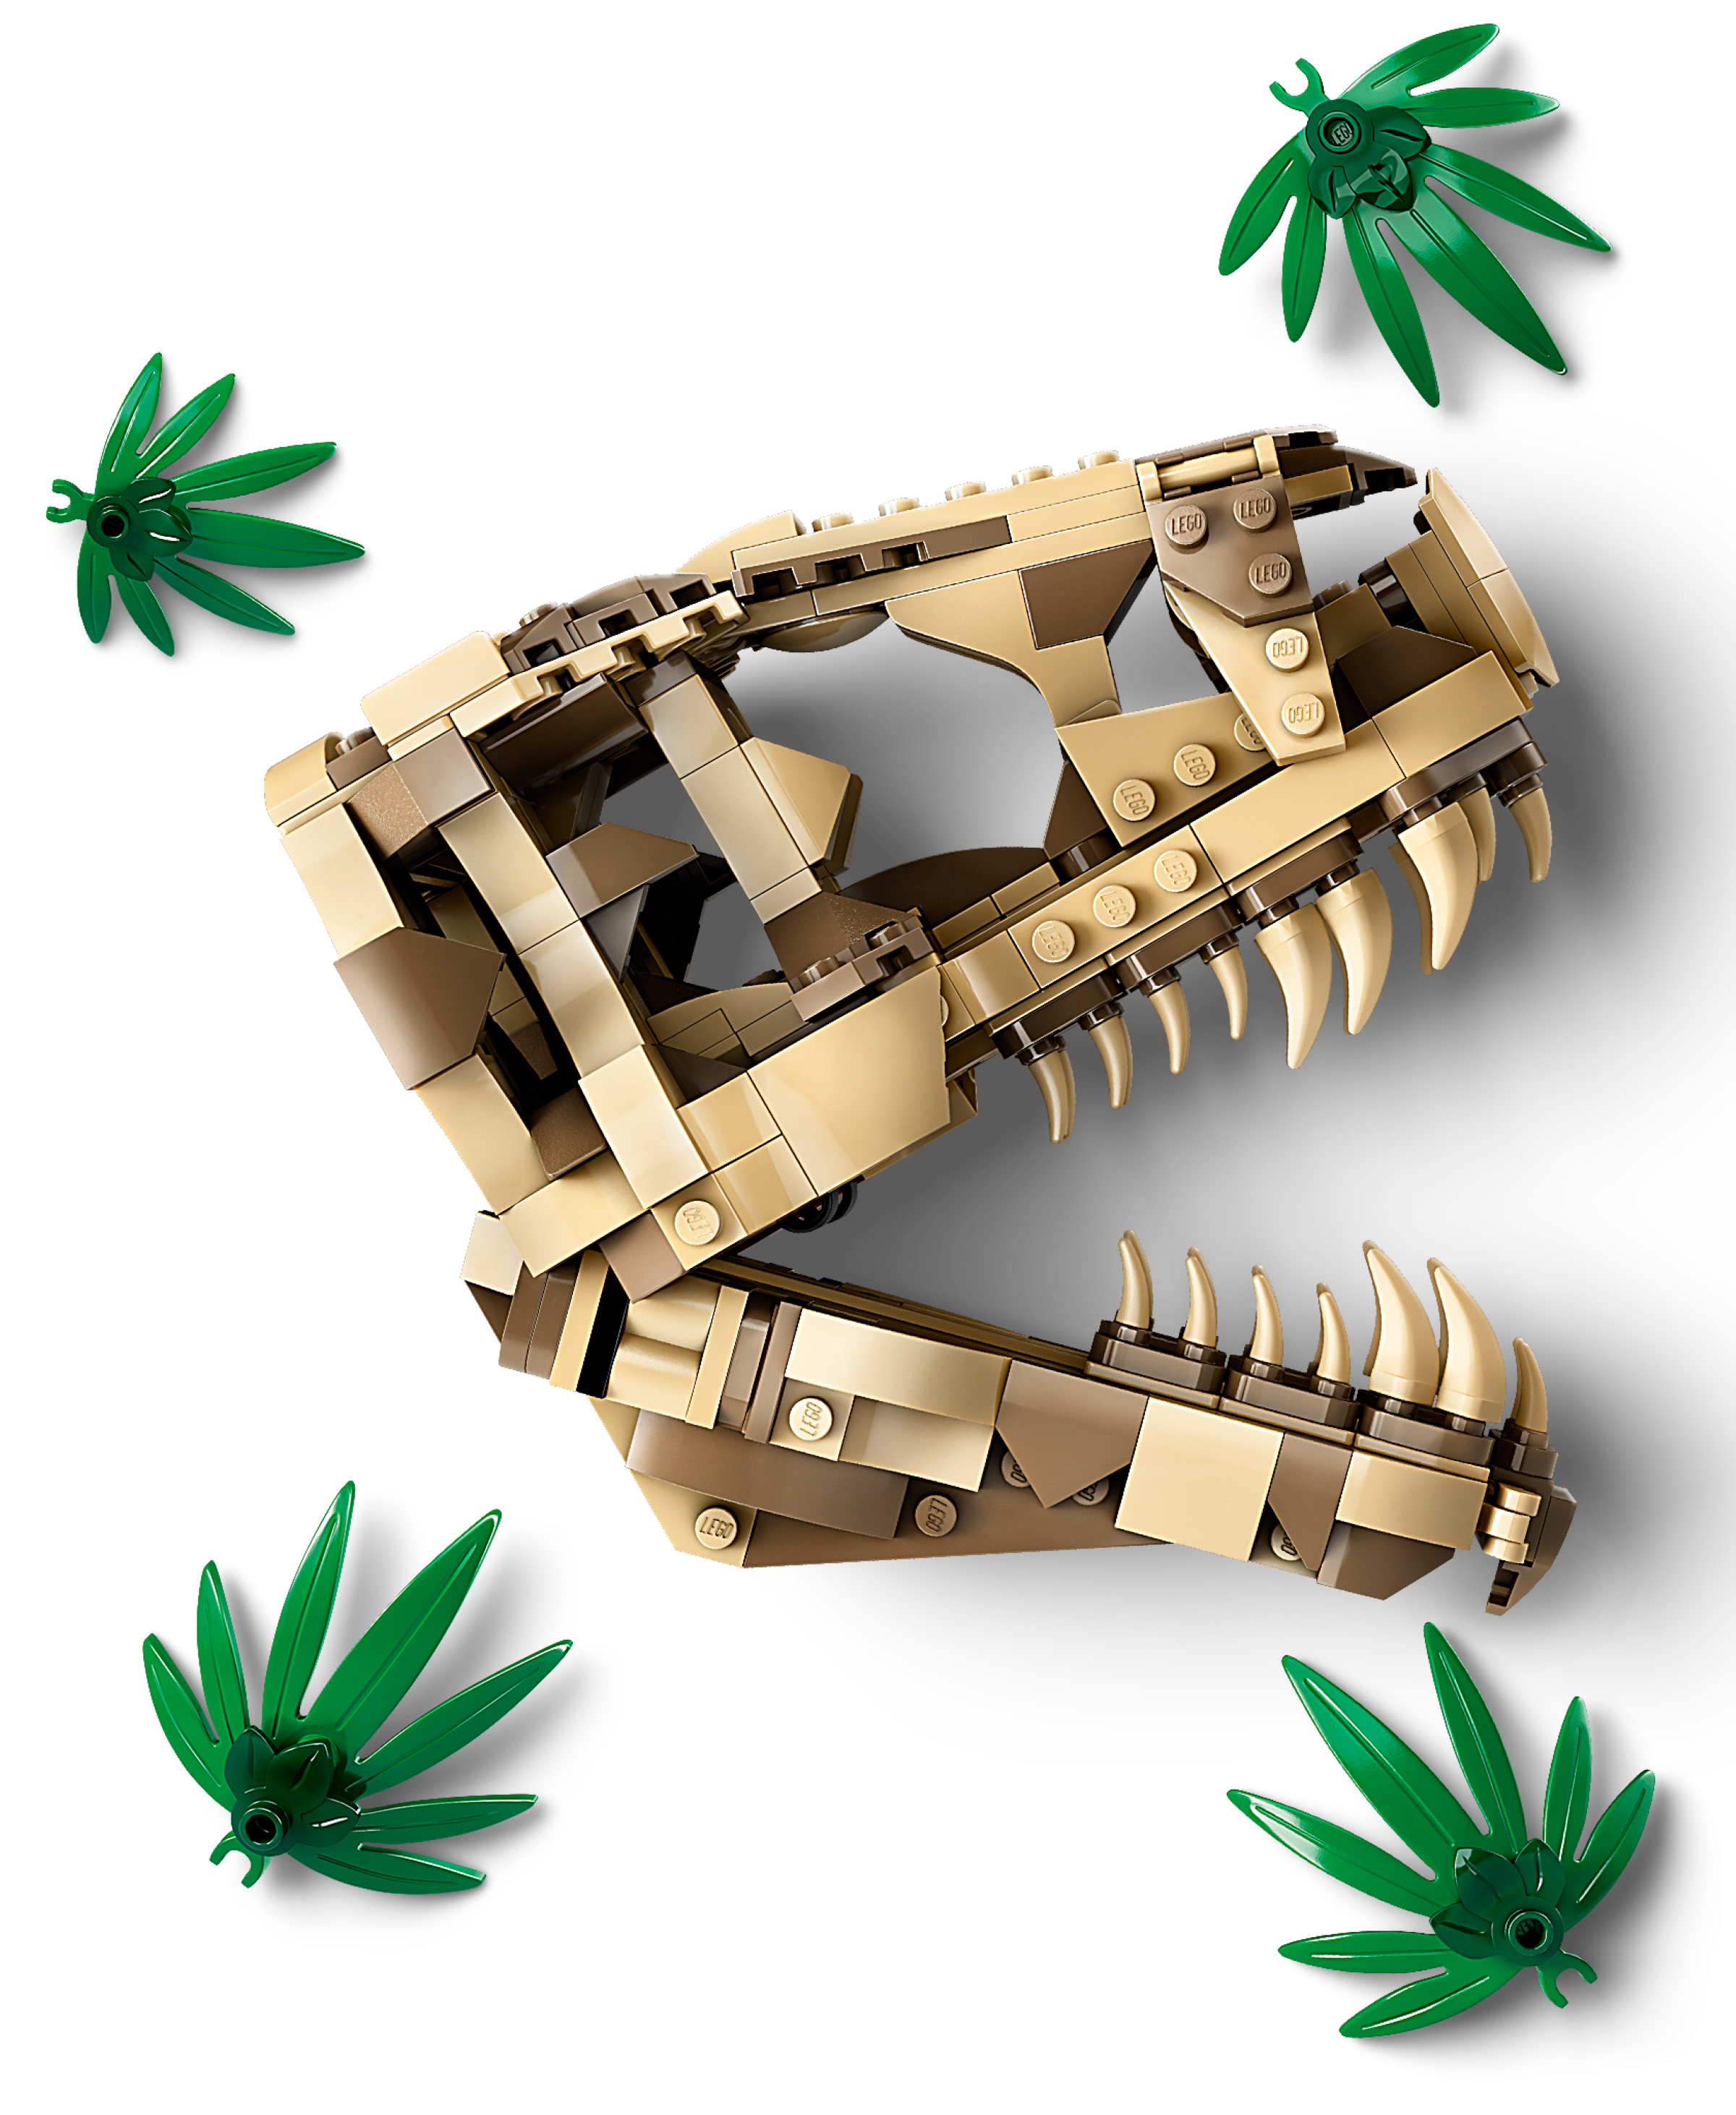 New for 2024: LEGO Jurassic Park Dinosaur Fossils: T.rex Skull 76964! 